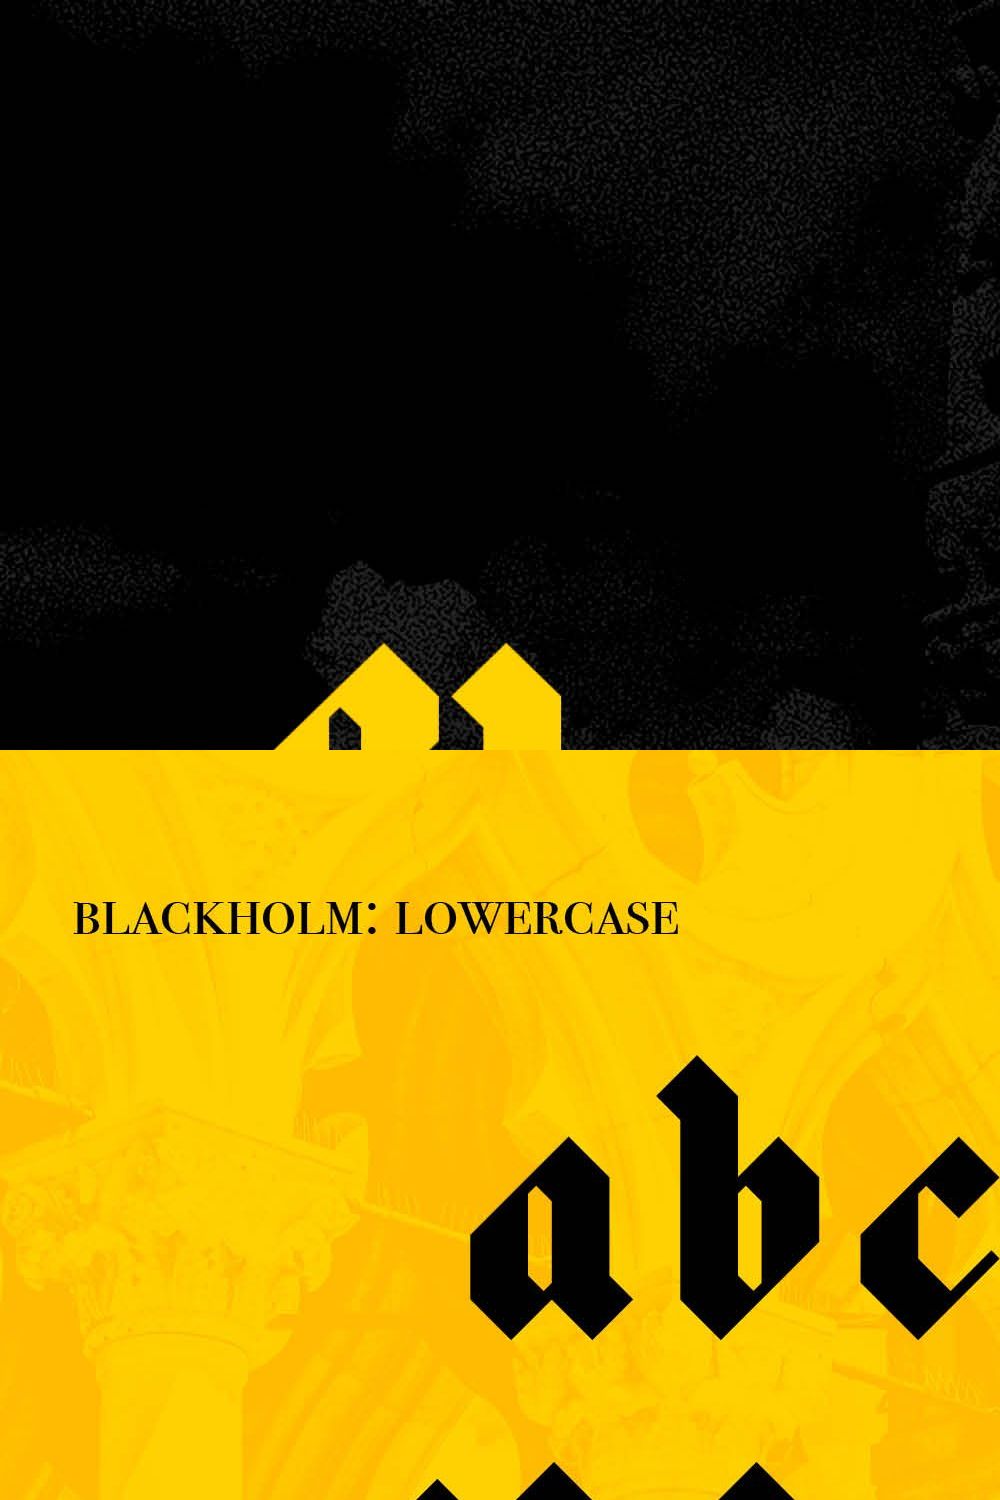 Blackholm - Blackletter font pinterest preview image.